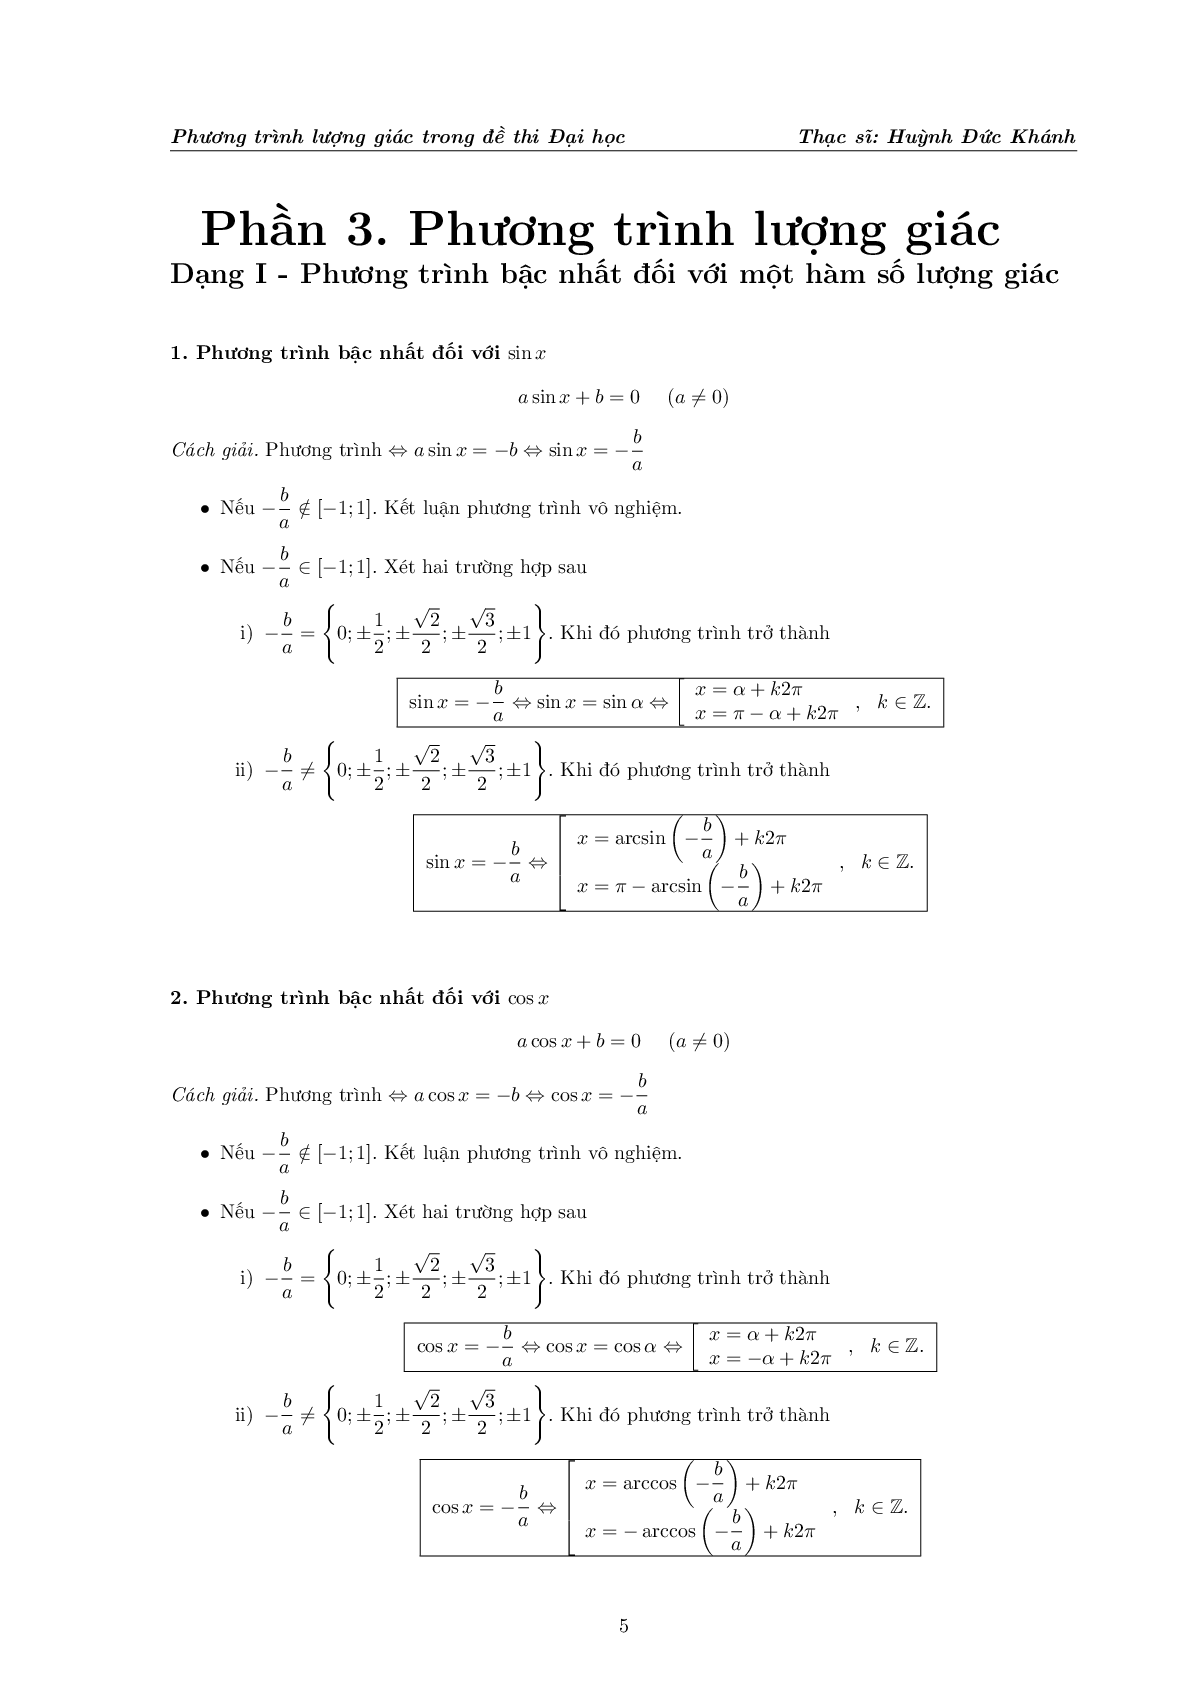 Phương trình lượng giác trong đề thi Đại học (trang 6)